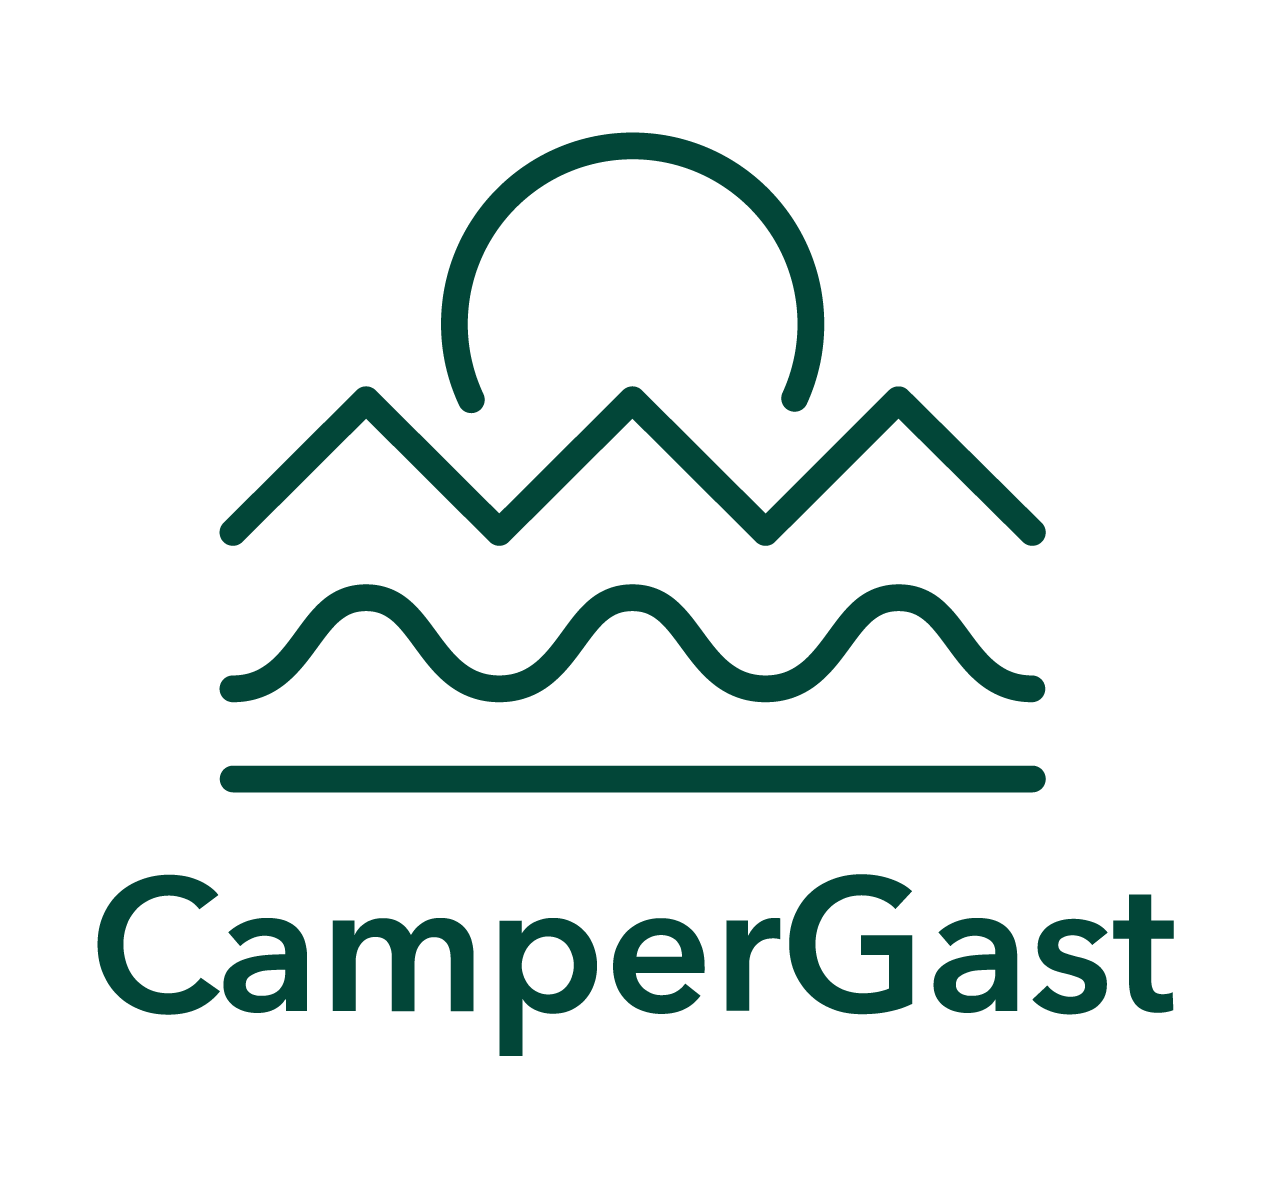 CamperGast